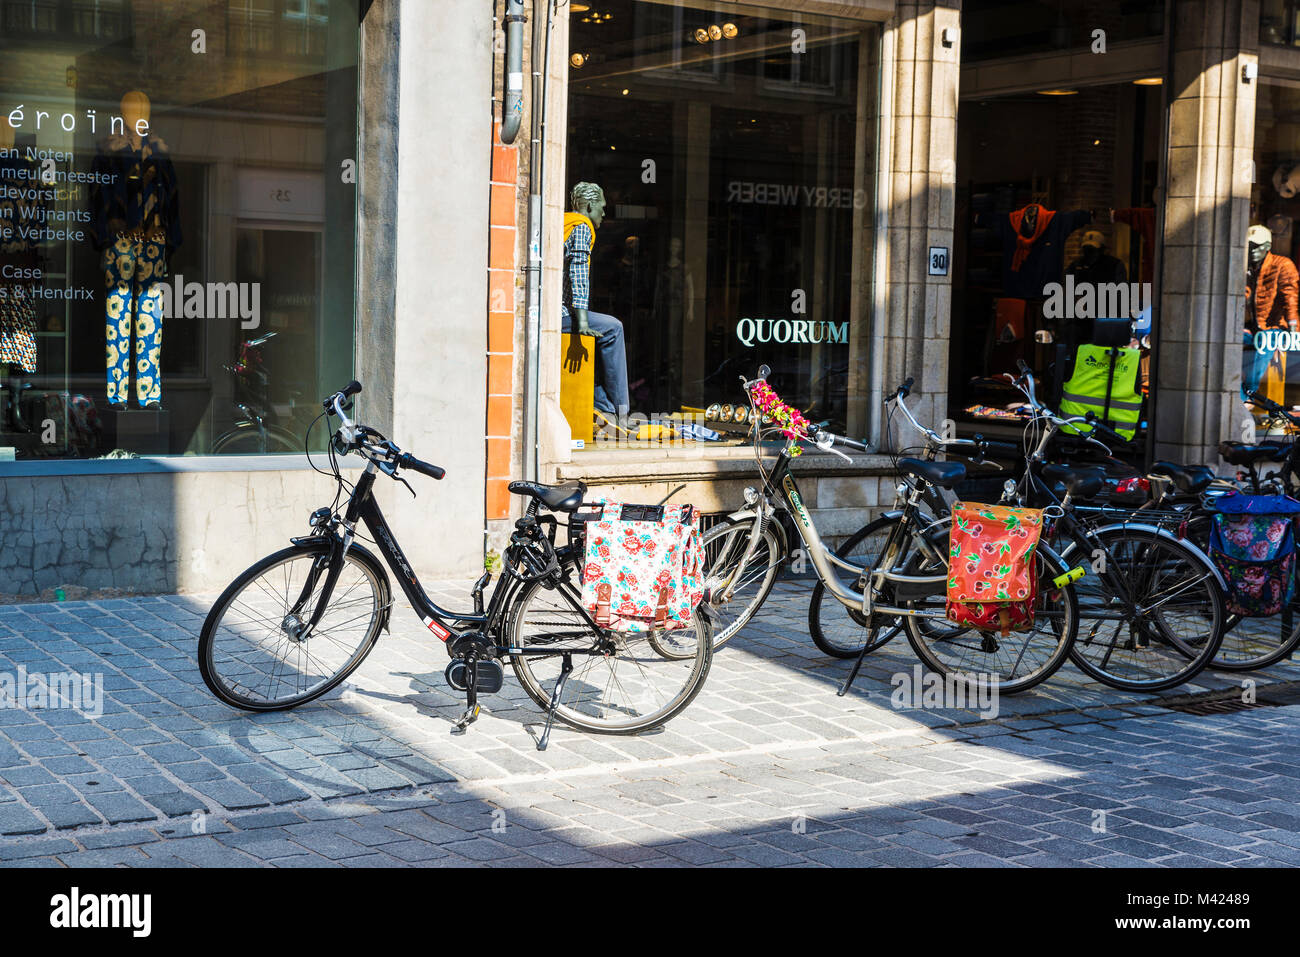 Bruges, Belgio - 1 Settembre 2017: Street con le biciclette parcheggiate davanti a un negozio di quorum nella città medievale di Bruges, Belgio Foto Stock